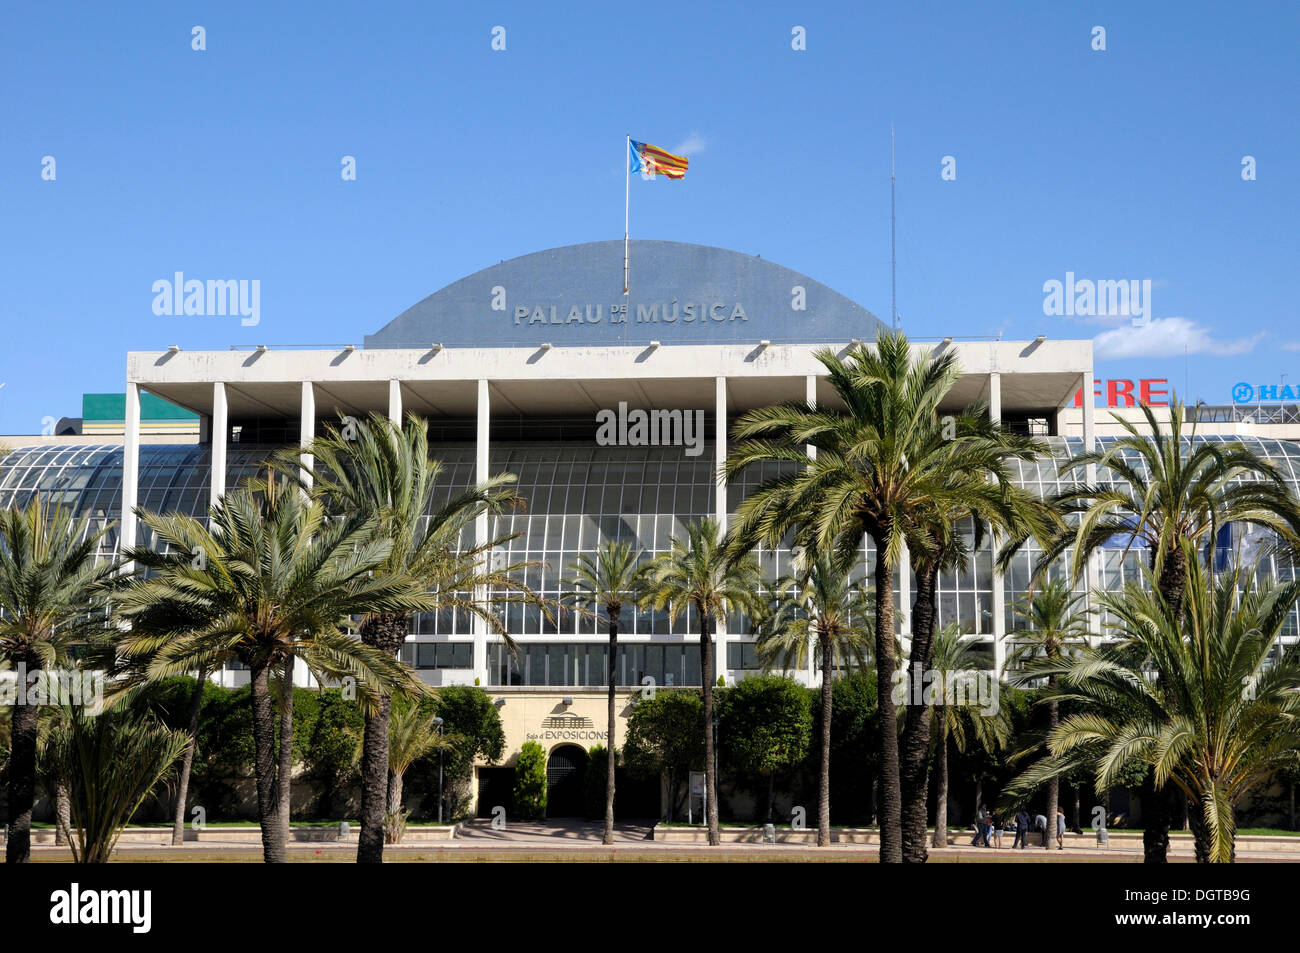 Palais de la musique, du Palau de la Música, Valencia, Espagne, Europe Banque D'Images